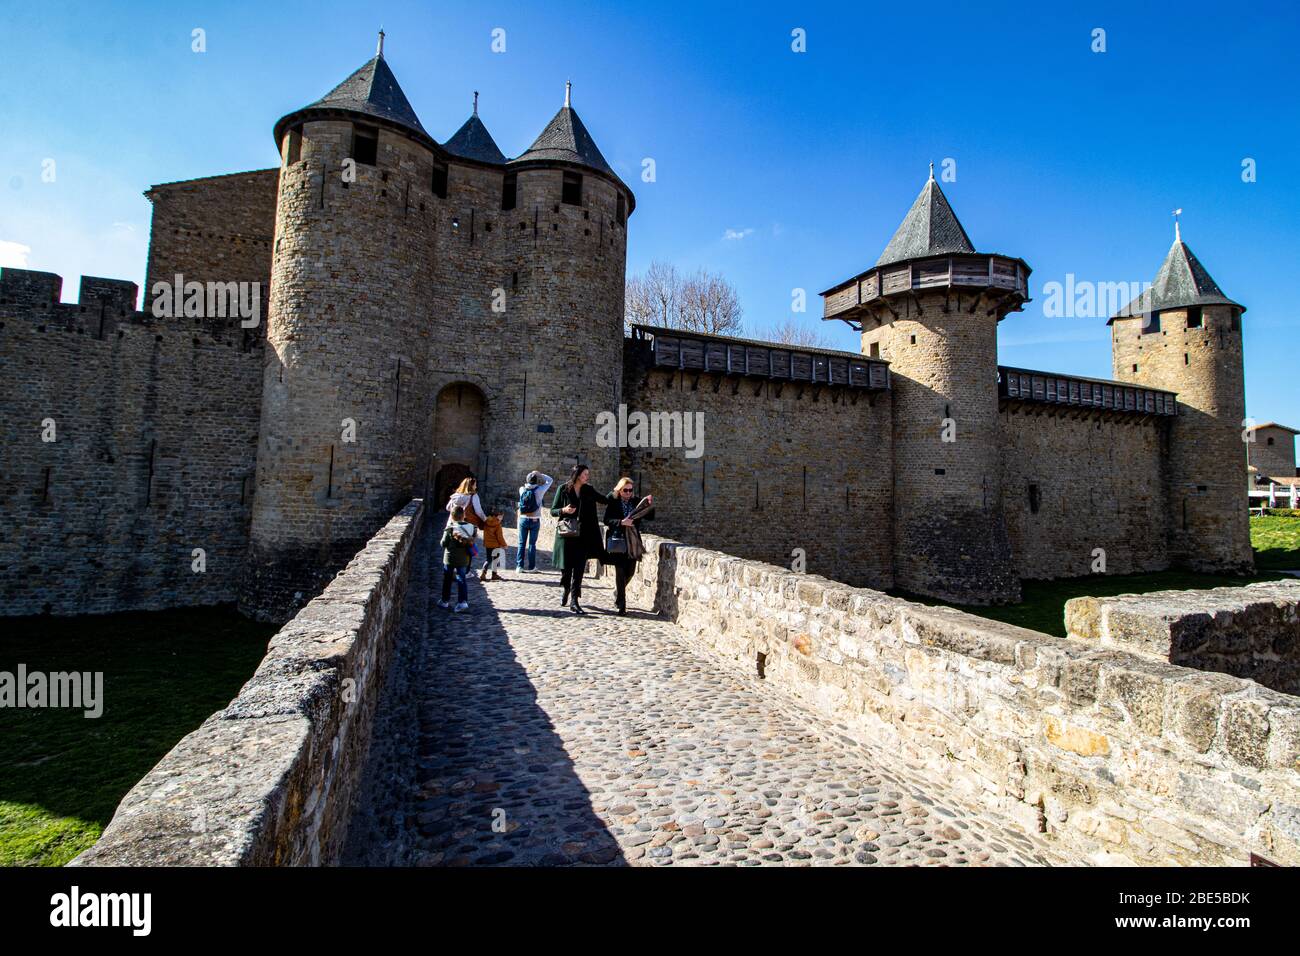 Cite de Carcassonne, Haute Garonne, France Stock Photo